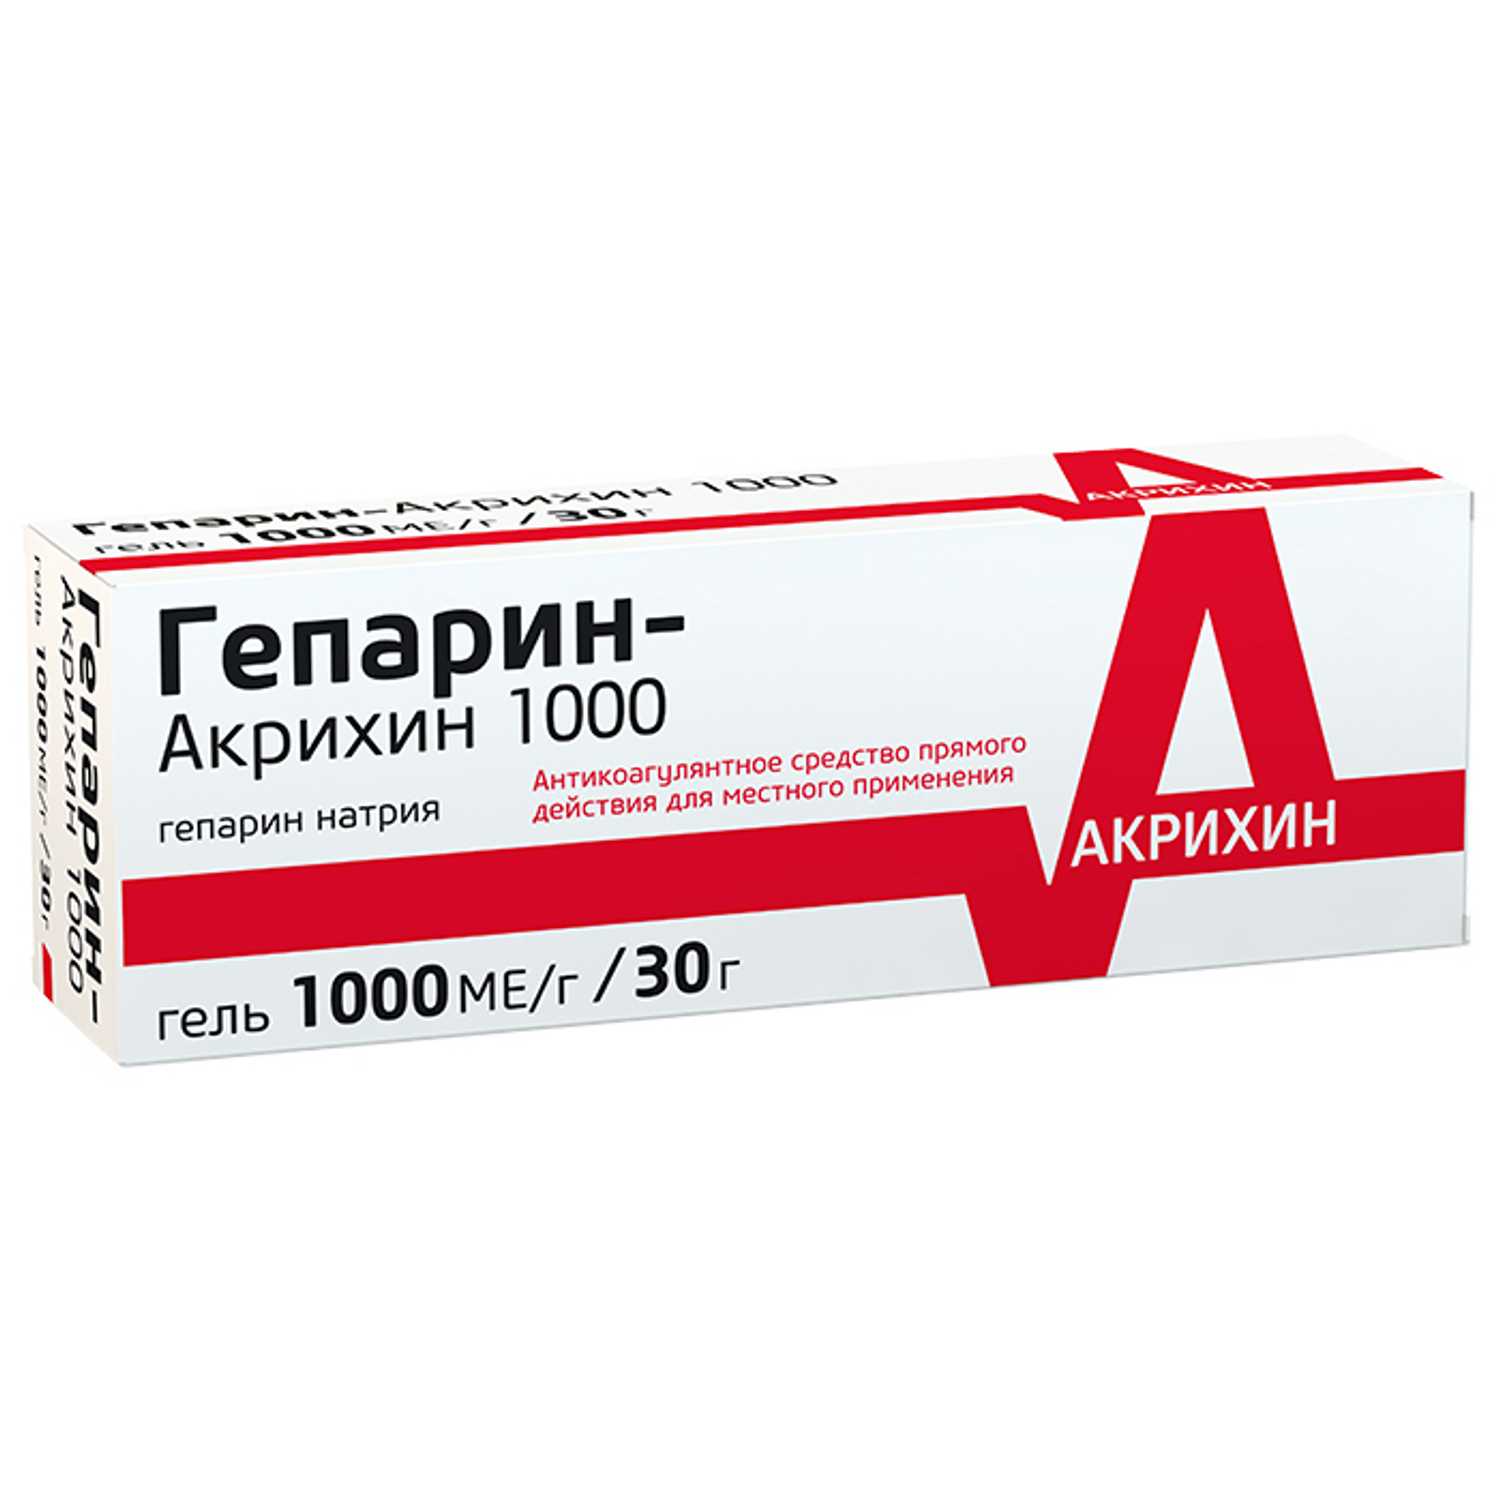 Купить Гепарин-Акрихин 1000 гель 1000 МЕ/г 30 г (гепарин натрия) по .